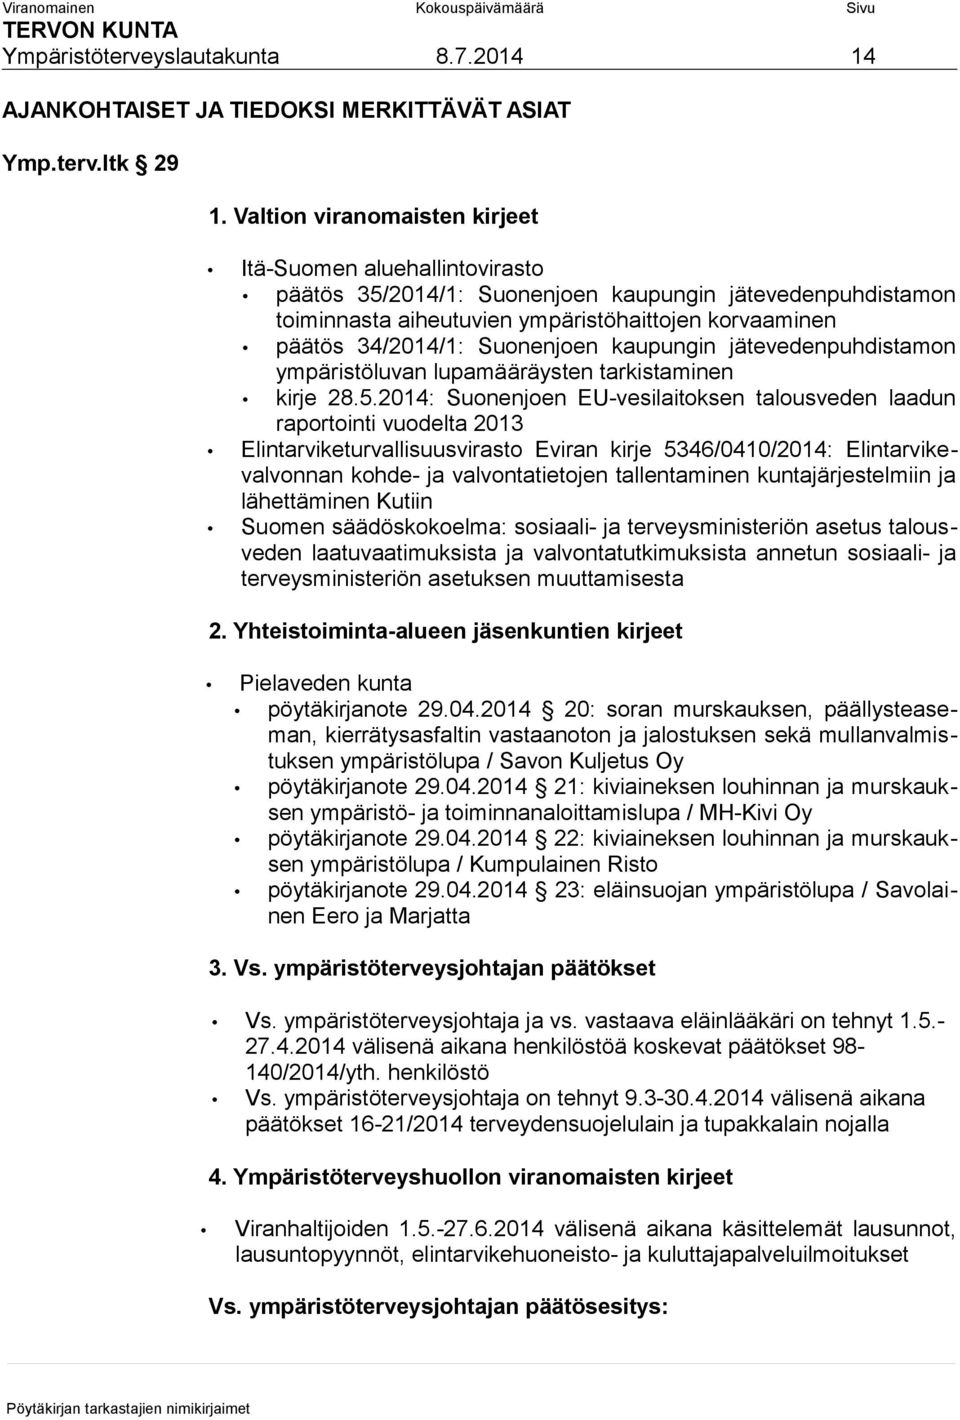 Suonenjoen kaupungin jätevedenpuhdistamon ympäristöluvan lupamääräysten tarkistaminen kirje 28.5.